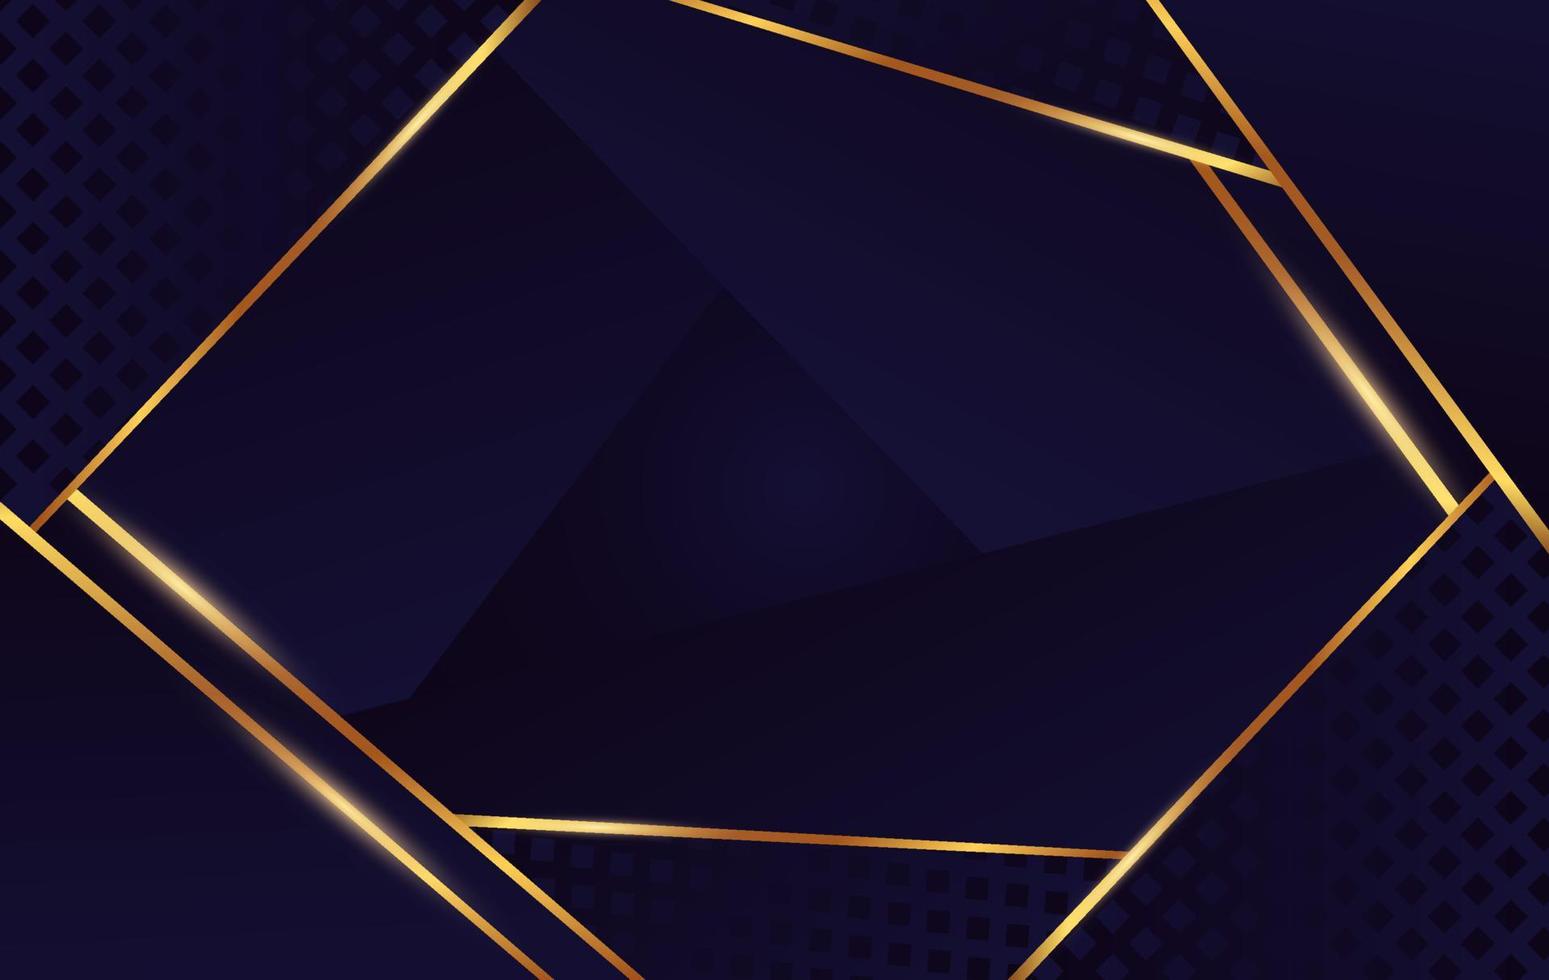 quadrado forma geométrica de ouro abstrato em fundo azul escuro e preto. elemento de linhas de luz dourada no cubo e triângulo ilustração gráfica vetorial de pano de fundo vetor